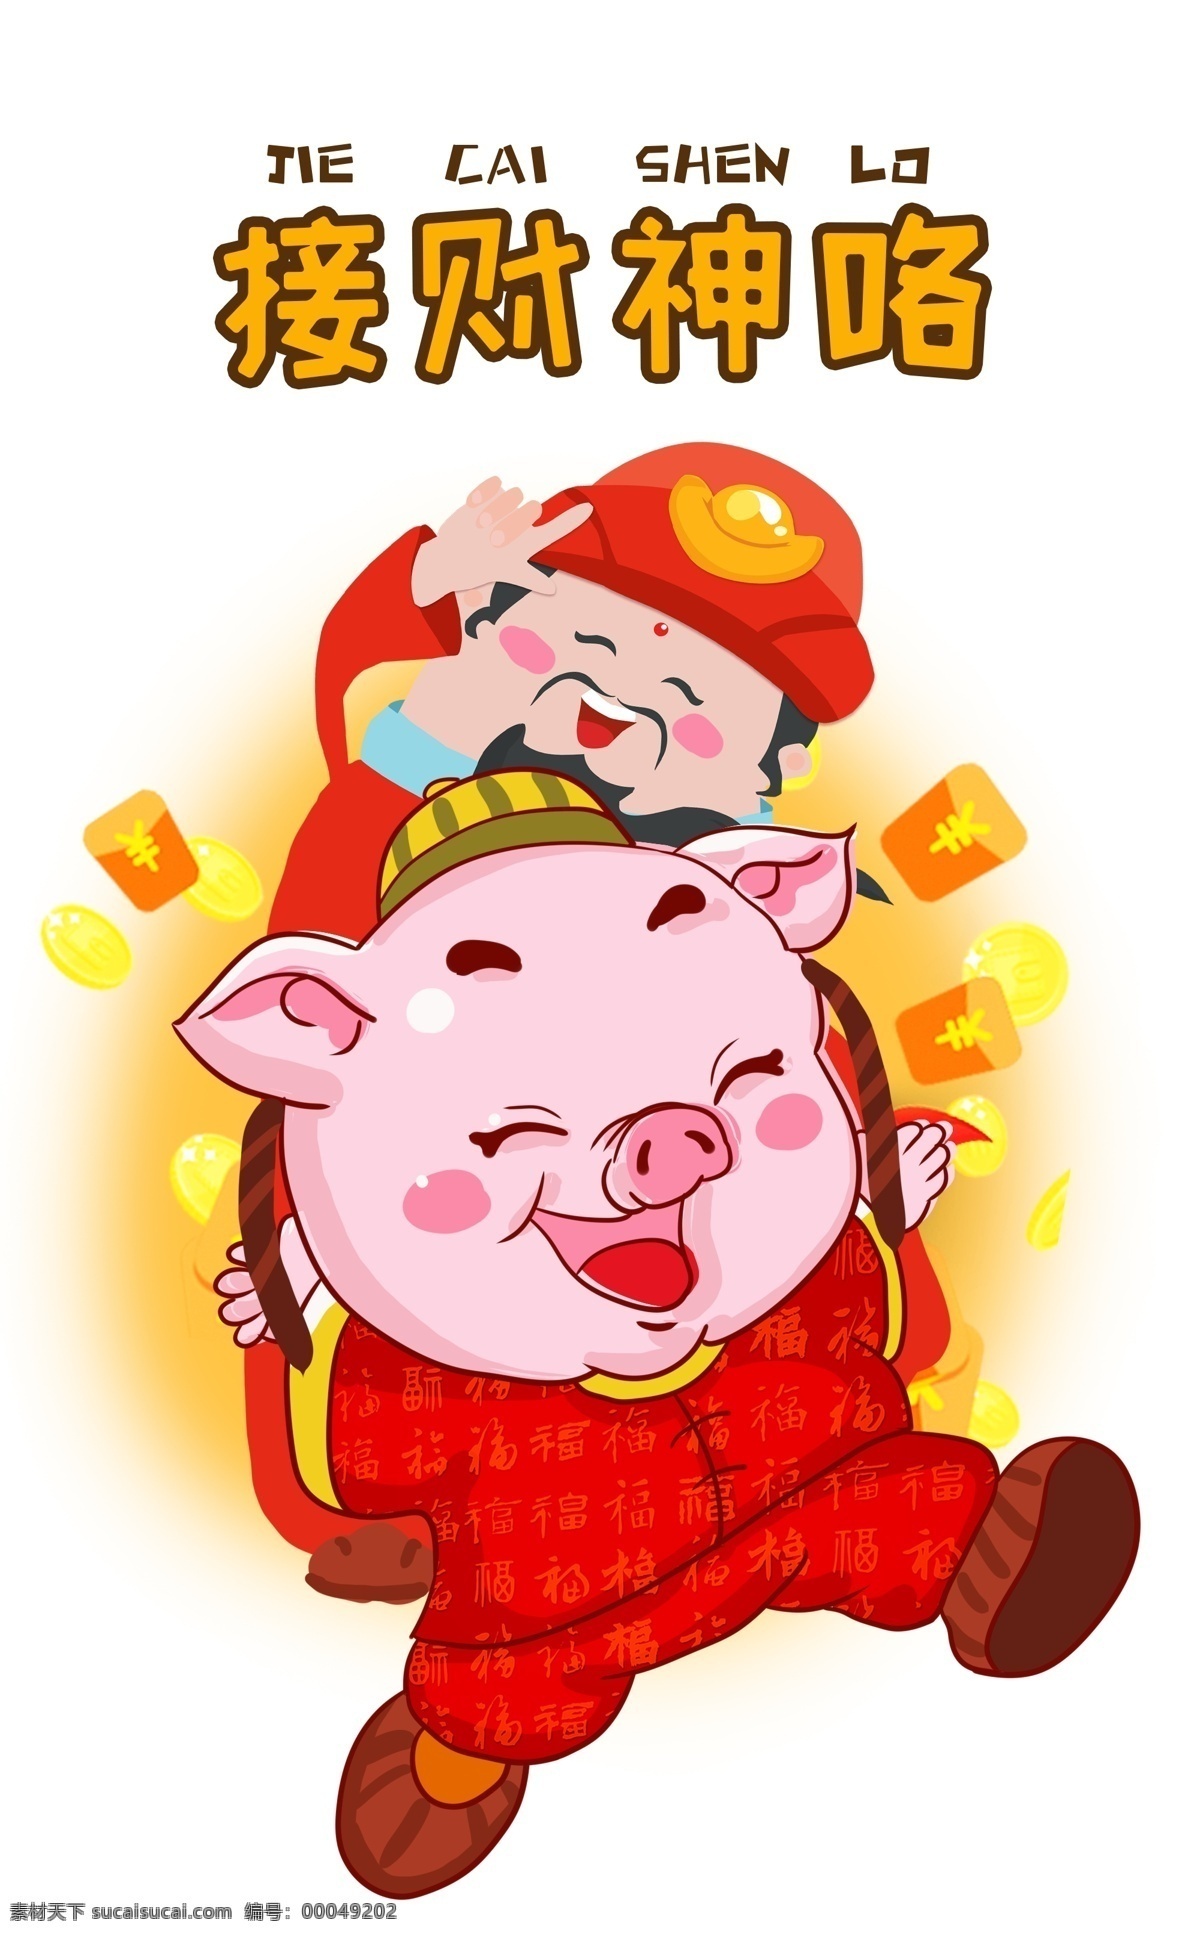 猪 祝福 发大财 卡通 插画 贺 新年 猪猪福气满满 吃喝 不 愁 桃花运 上上 签 猪猪祝福躺赚